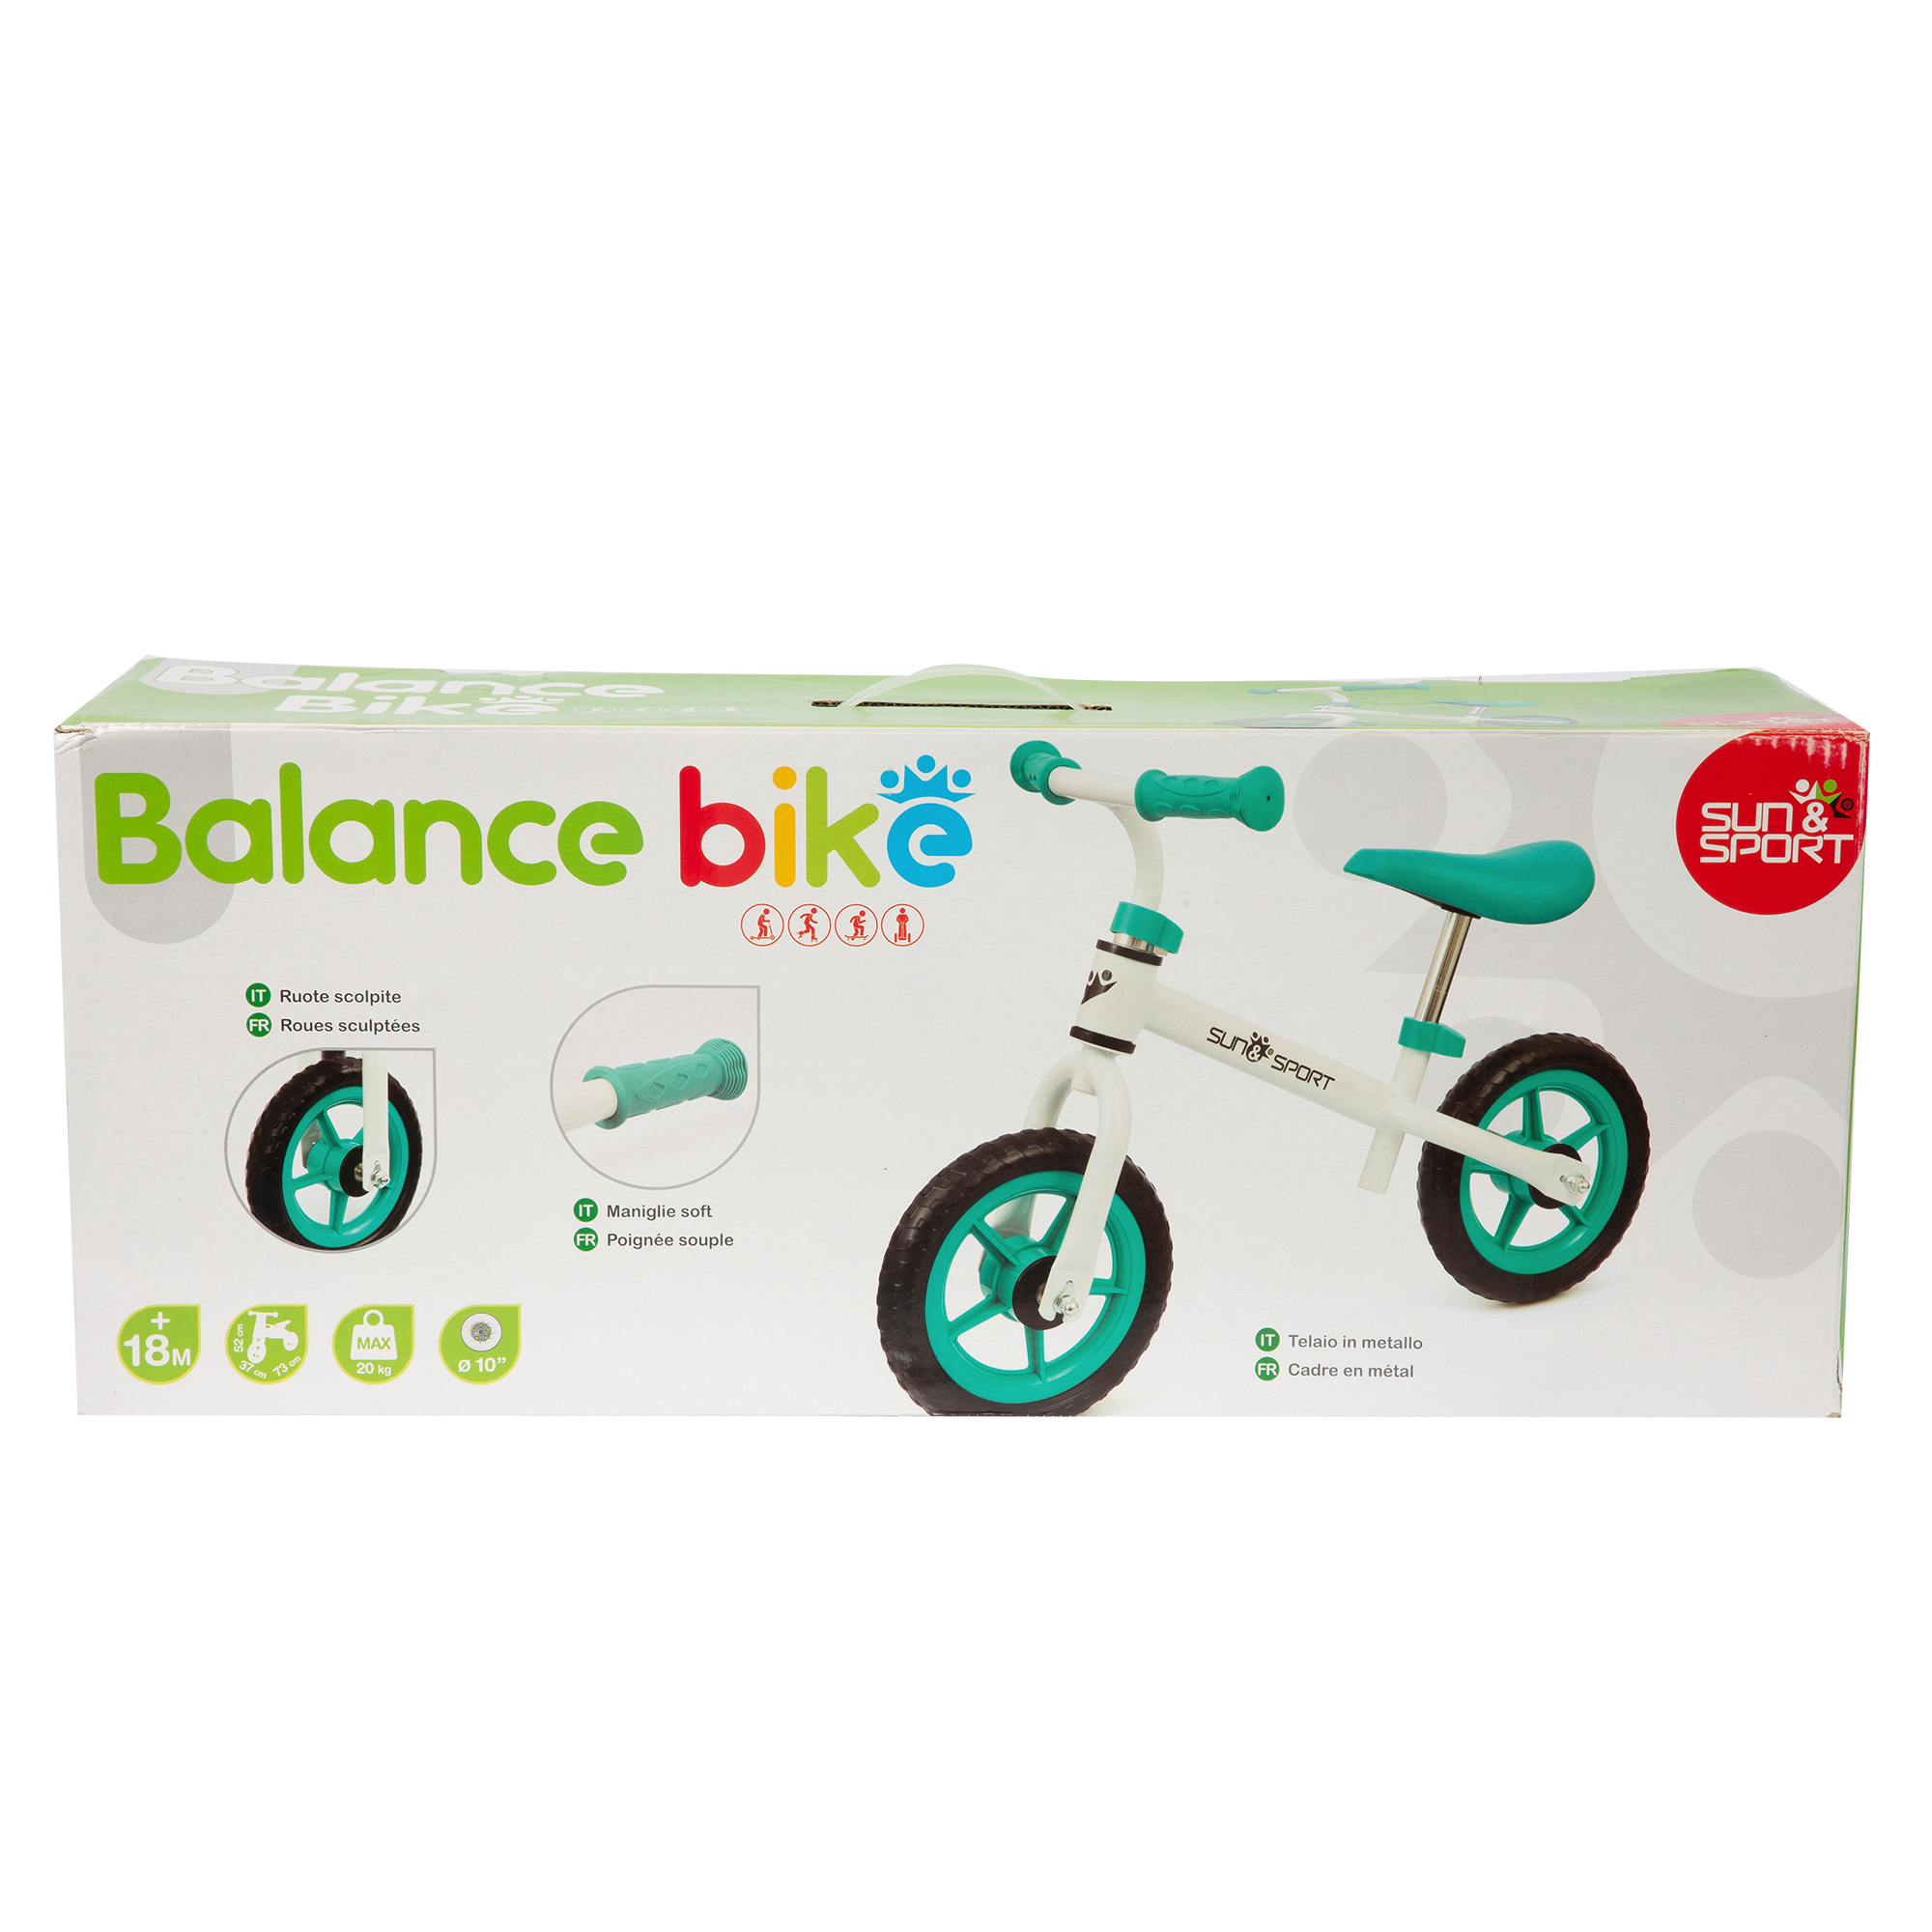 Balance bike - SUN&SPORT